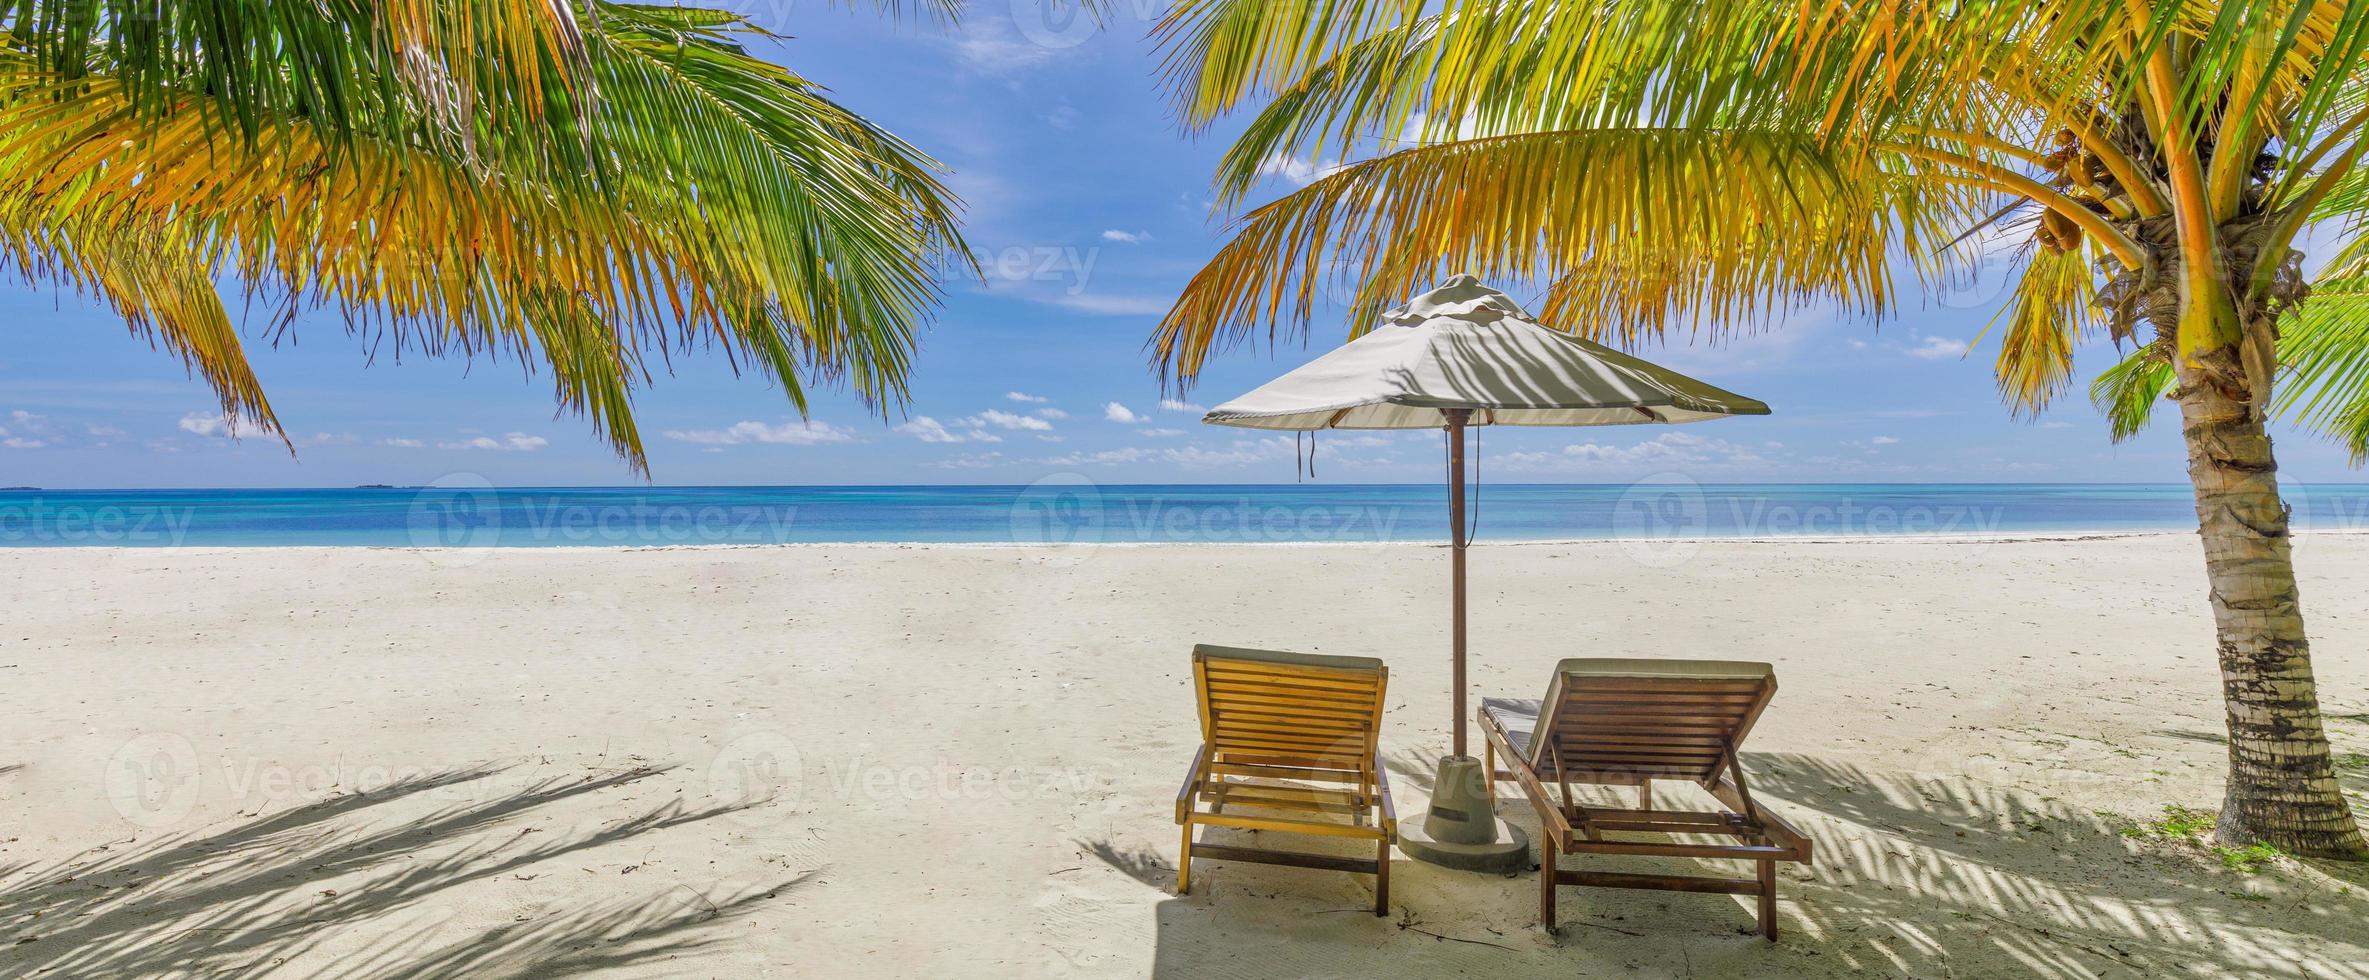 plage de vacances incroyable. quelques chaises ensemble au bord de la mer bannière. concept de lune de miel de vacances romantiques d'été. paysage d'île tropicale. panorama tranquille sur la côte, horizon de bord de mer de sable relaxant, feuilles de palmier photo